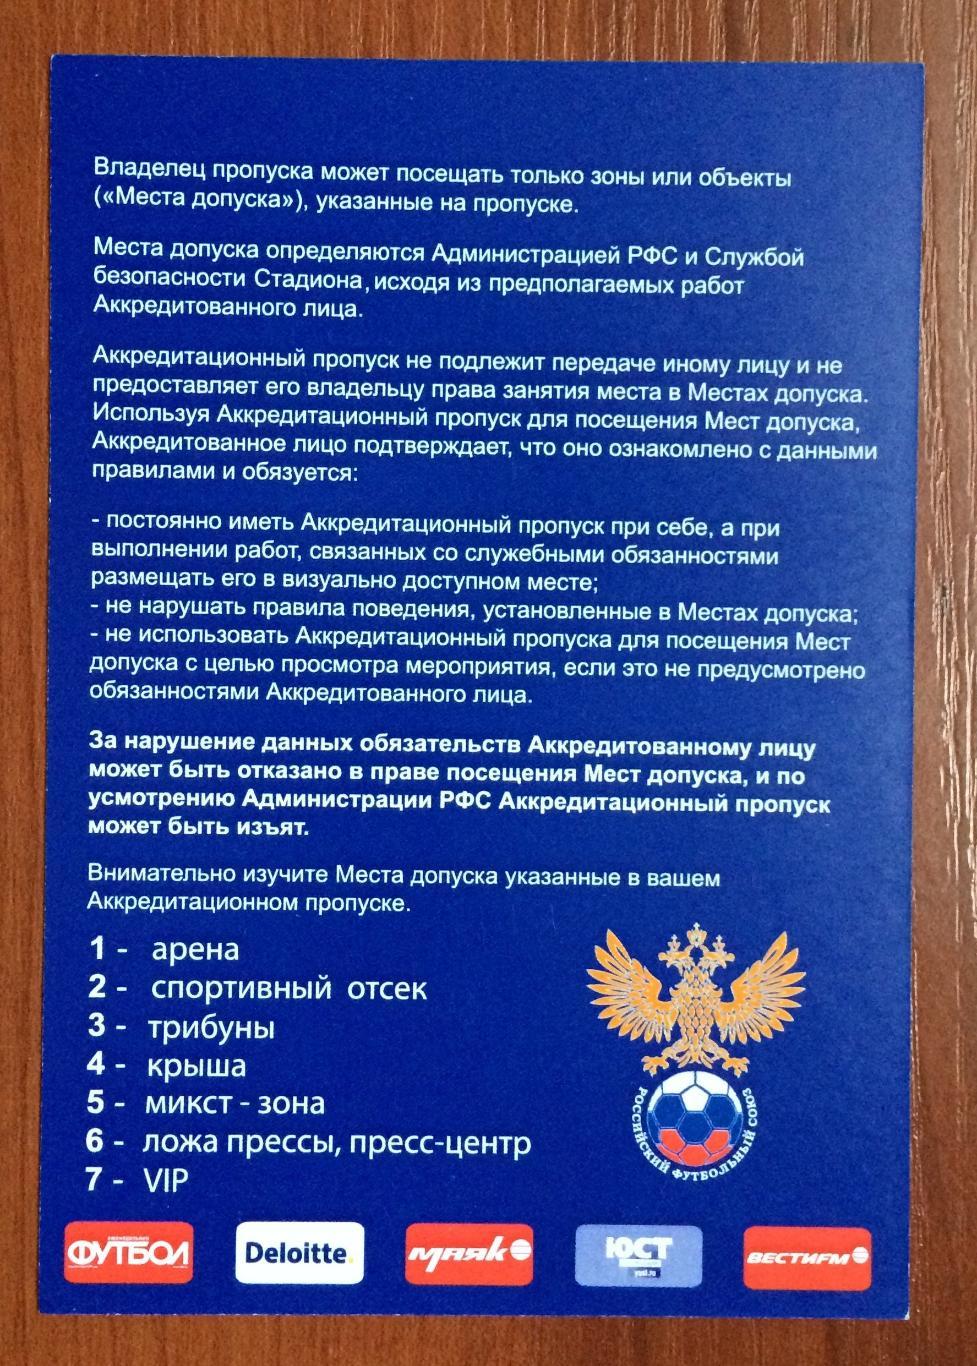 Аккредитация ТОРГОВЛЯ Россия - Словакия 26.05.2014 матч в Санкт-Петербурге 1